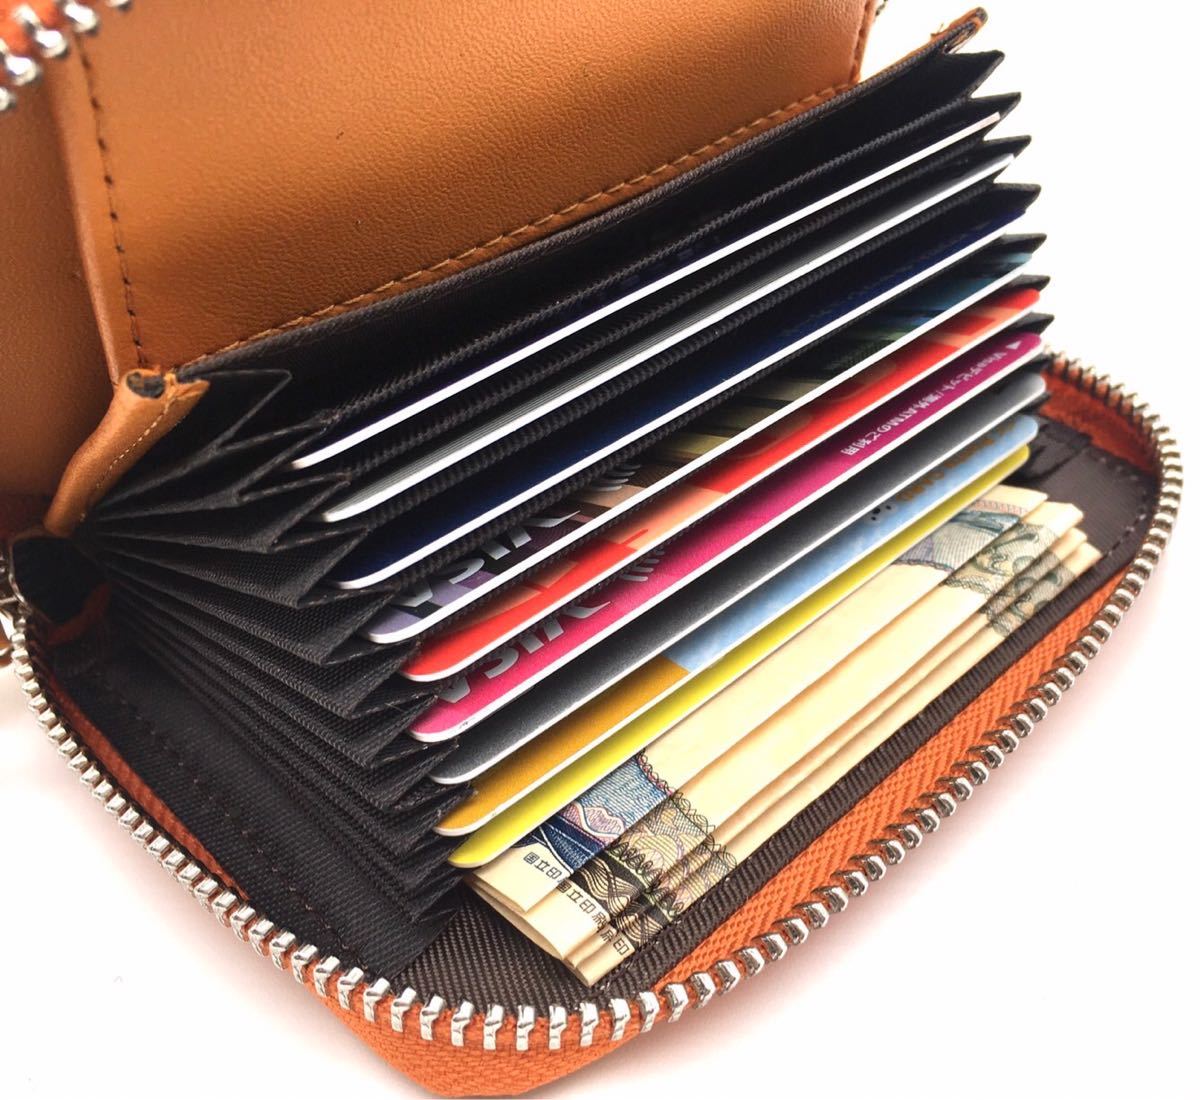 ＜収容力が驚異的＞ミニ財布 YKKファスナー BOX型小銭入れ ライトオレンジ コインケース コンパクト財布 大容量 カードケース